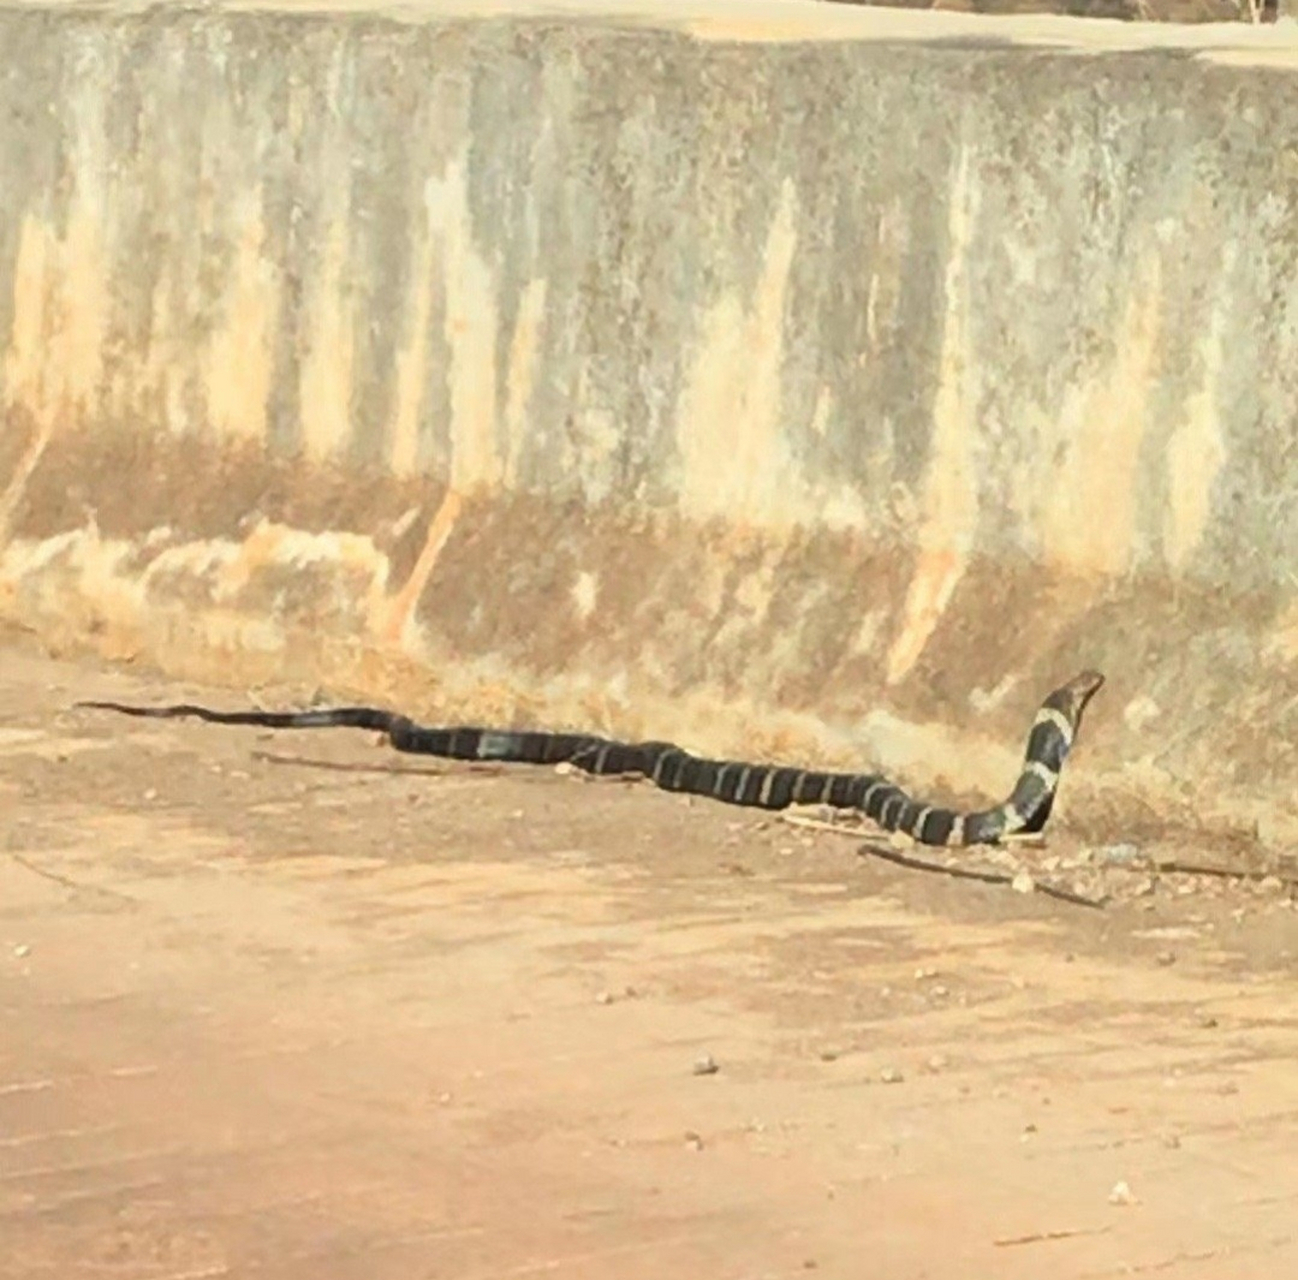 眼镜王蛇在阳江叫做过山乌,这种蛇剧毒无比,网上也经常看到有捉蛇者被